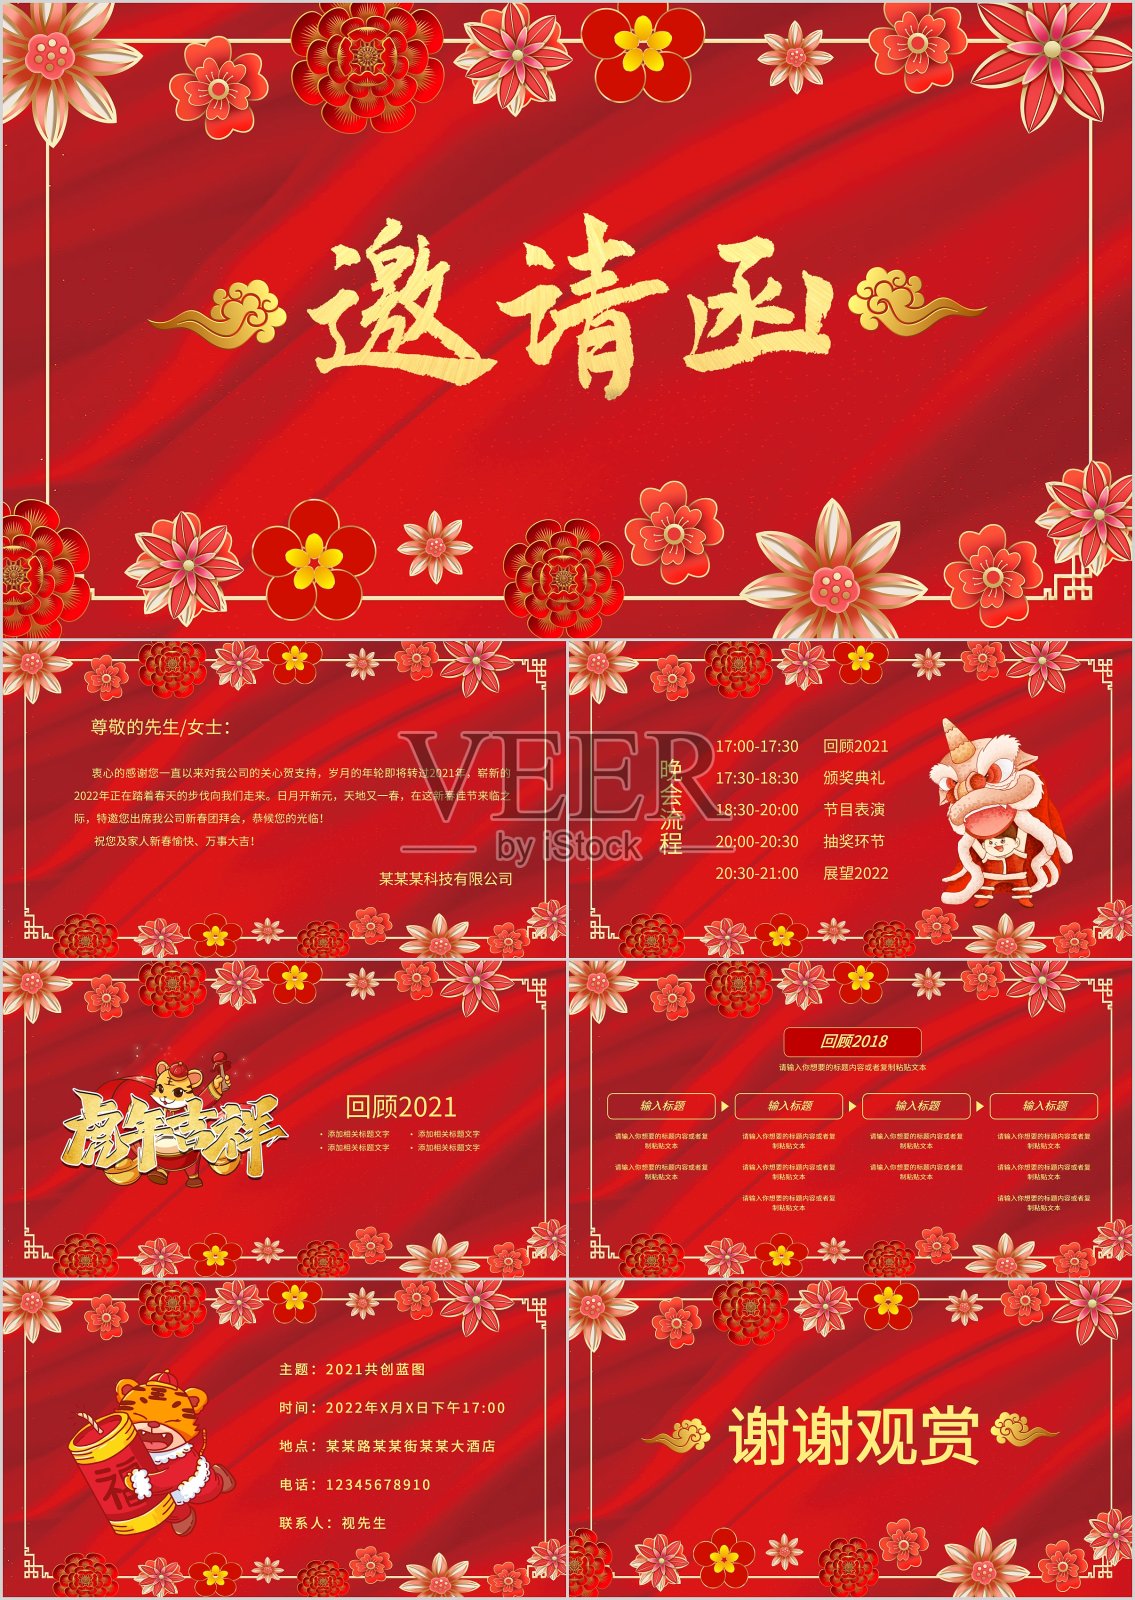 红色中国风年会邀请函PPT模板设计模板素材